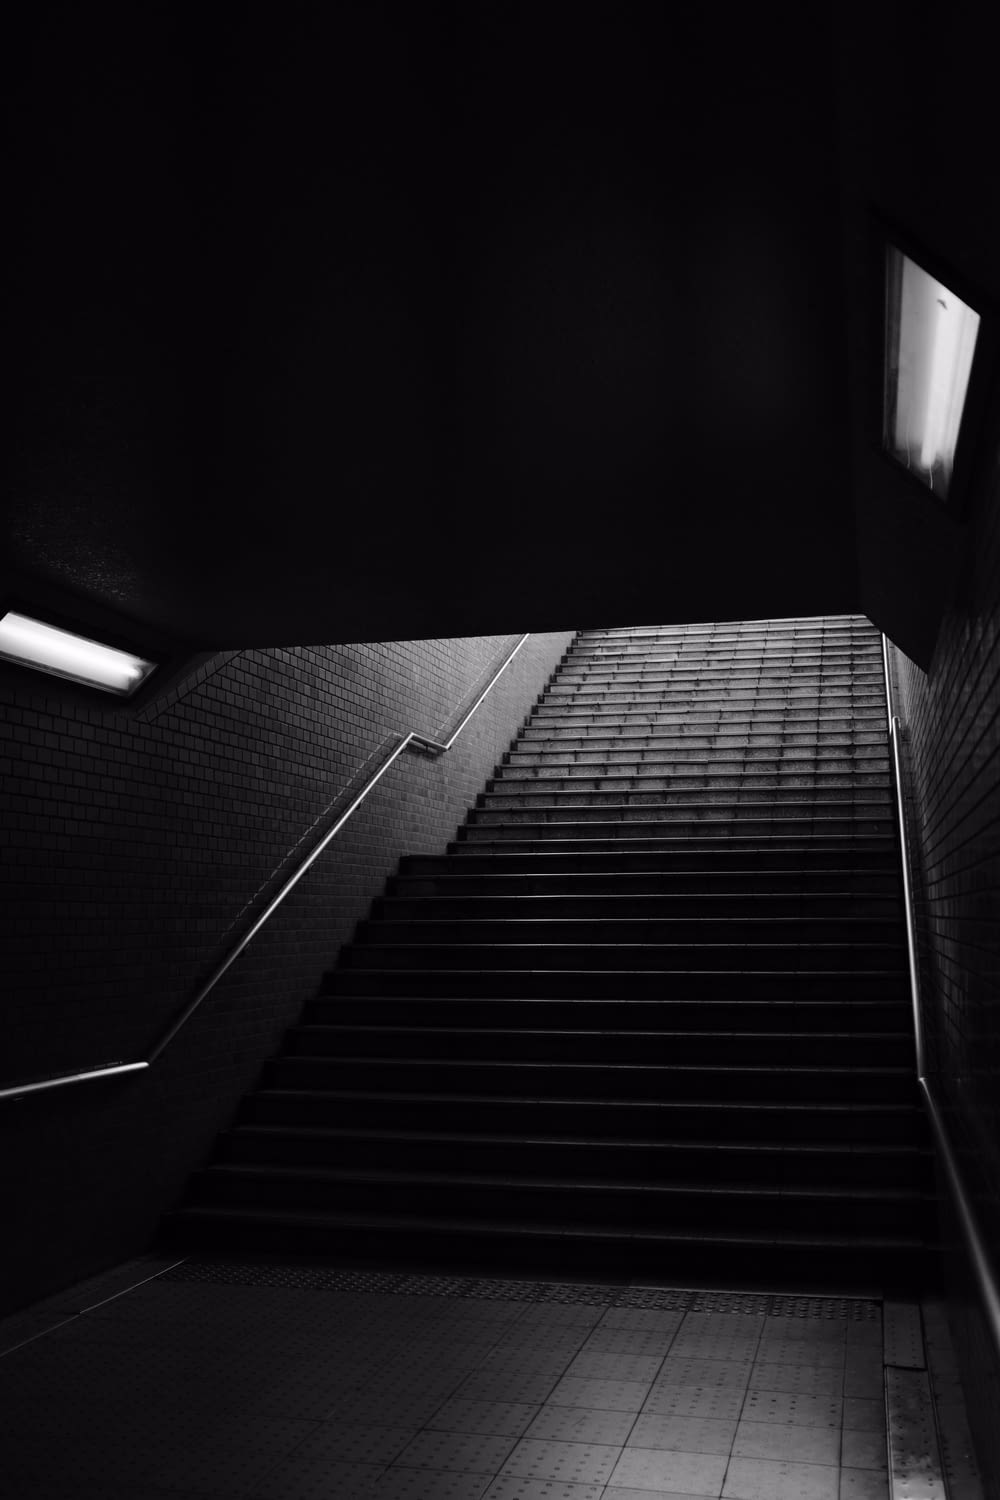 Photographie en niveaux de gris de l’escalier